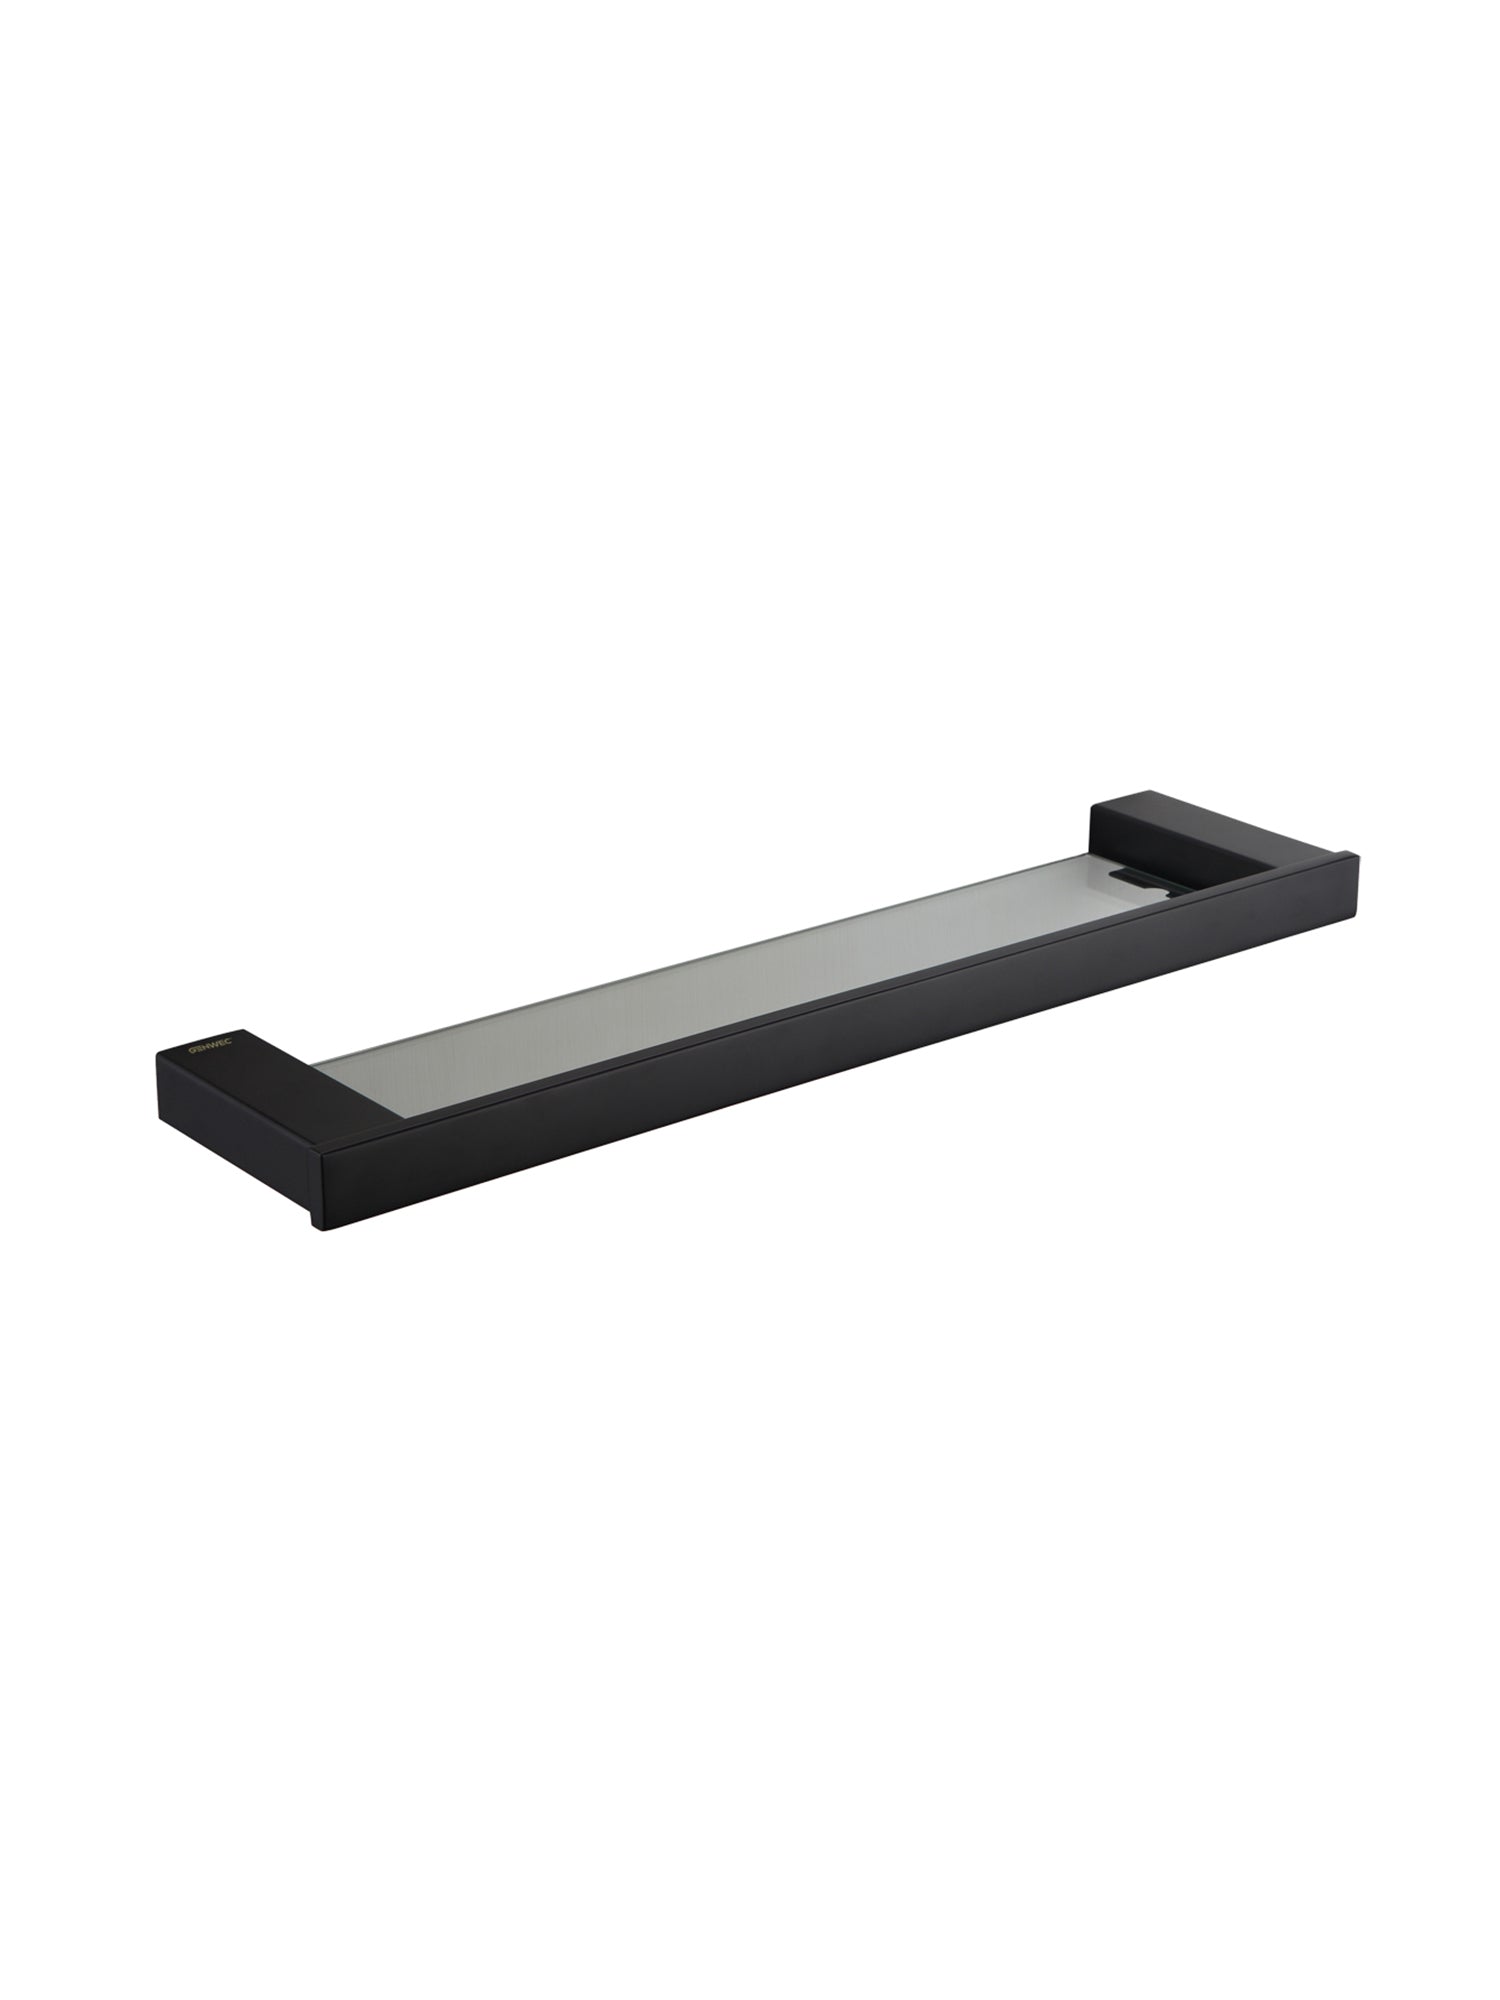 Pompei GW05 66 04 03 Black Glass Shelf - Stainless Steel